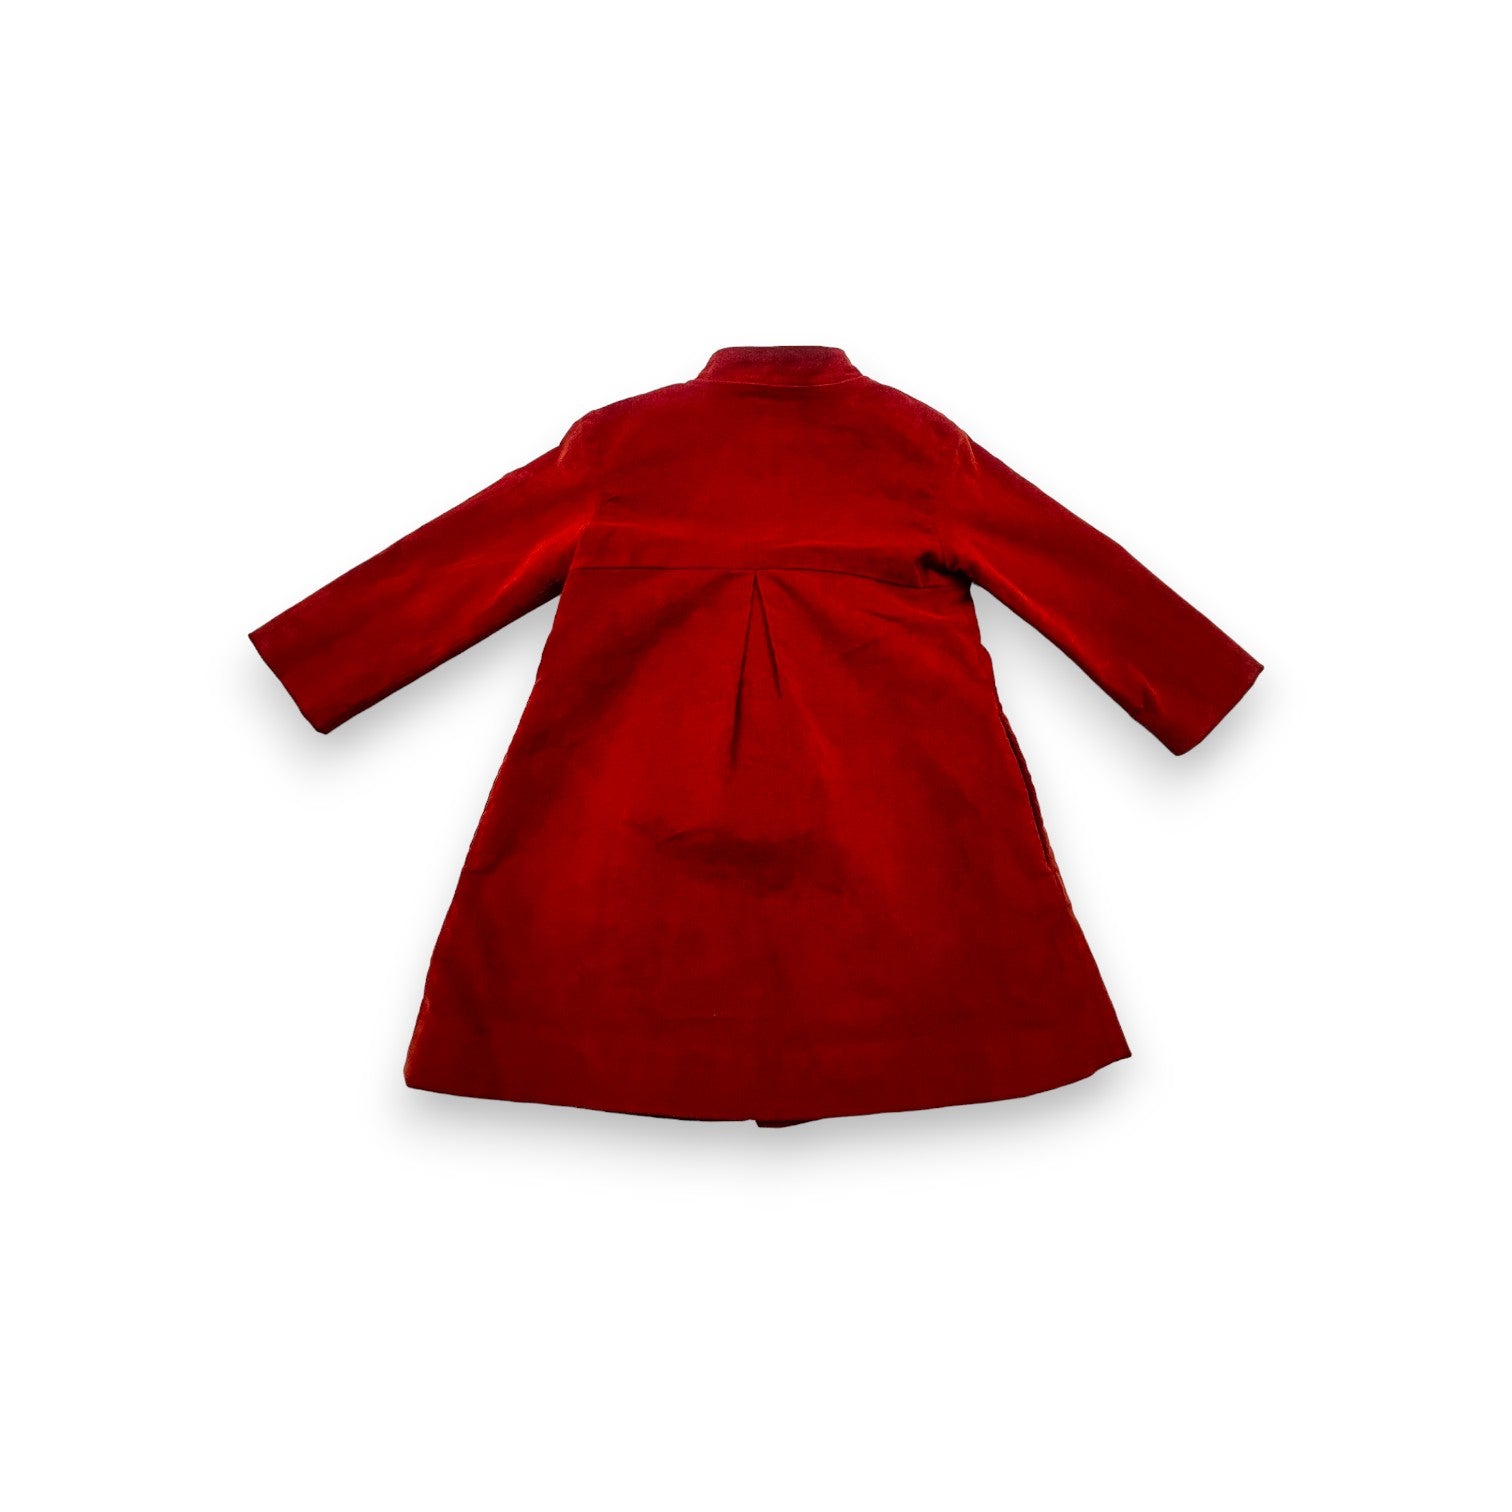 ANTOINE & LILI - Robe en velours rouge - 4 ans